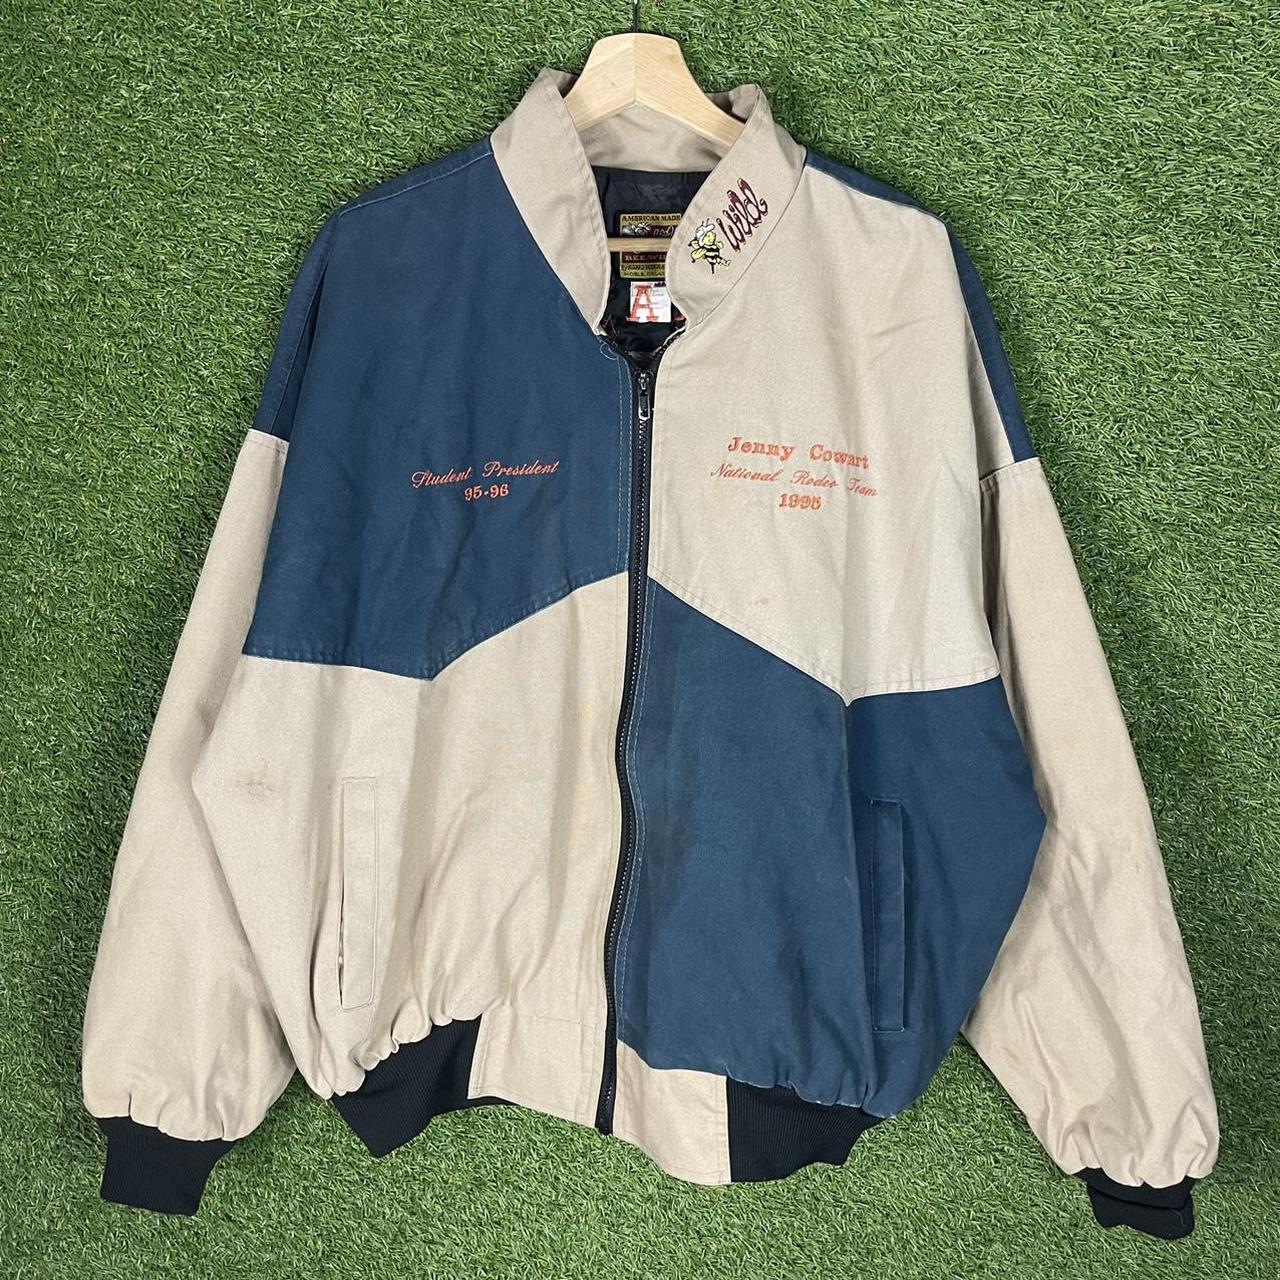 Vintage ‘95 Florida rodeo jacket Embroidery on back... - Depop